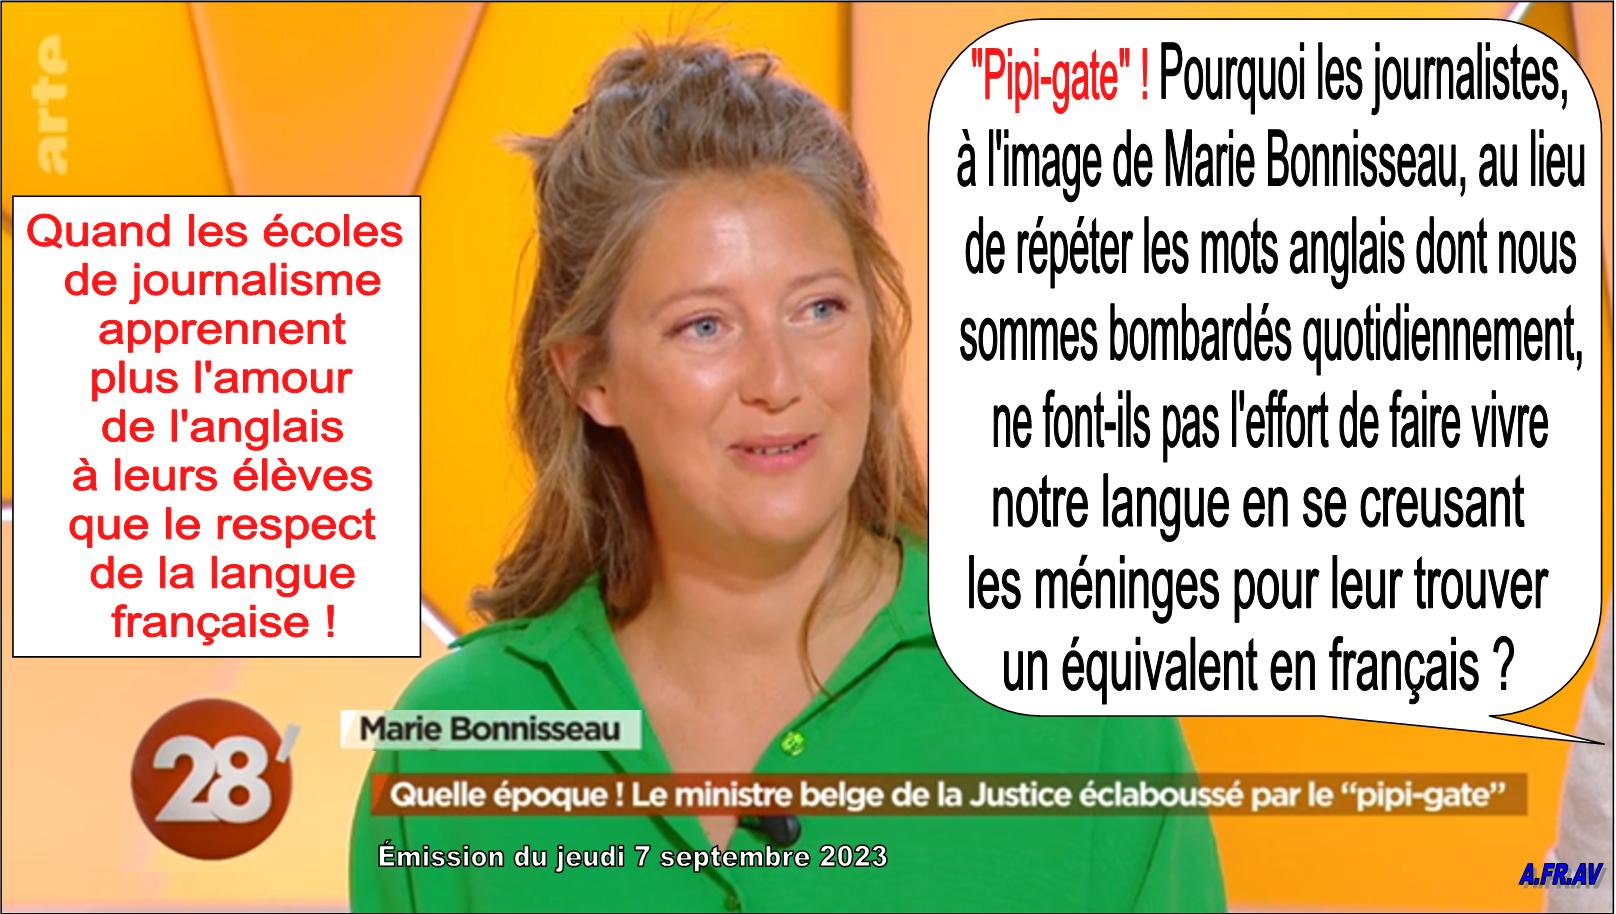 Marie Bonnisseau, journaliste, Arte 28 Minutes, Elisabeth Quin